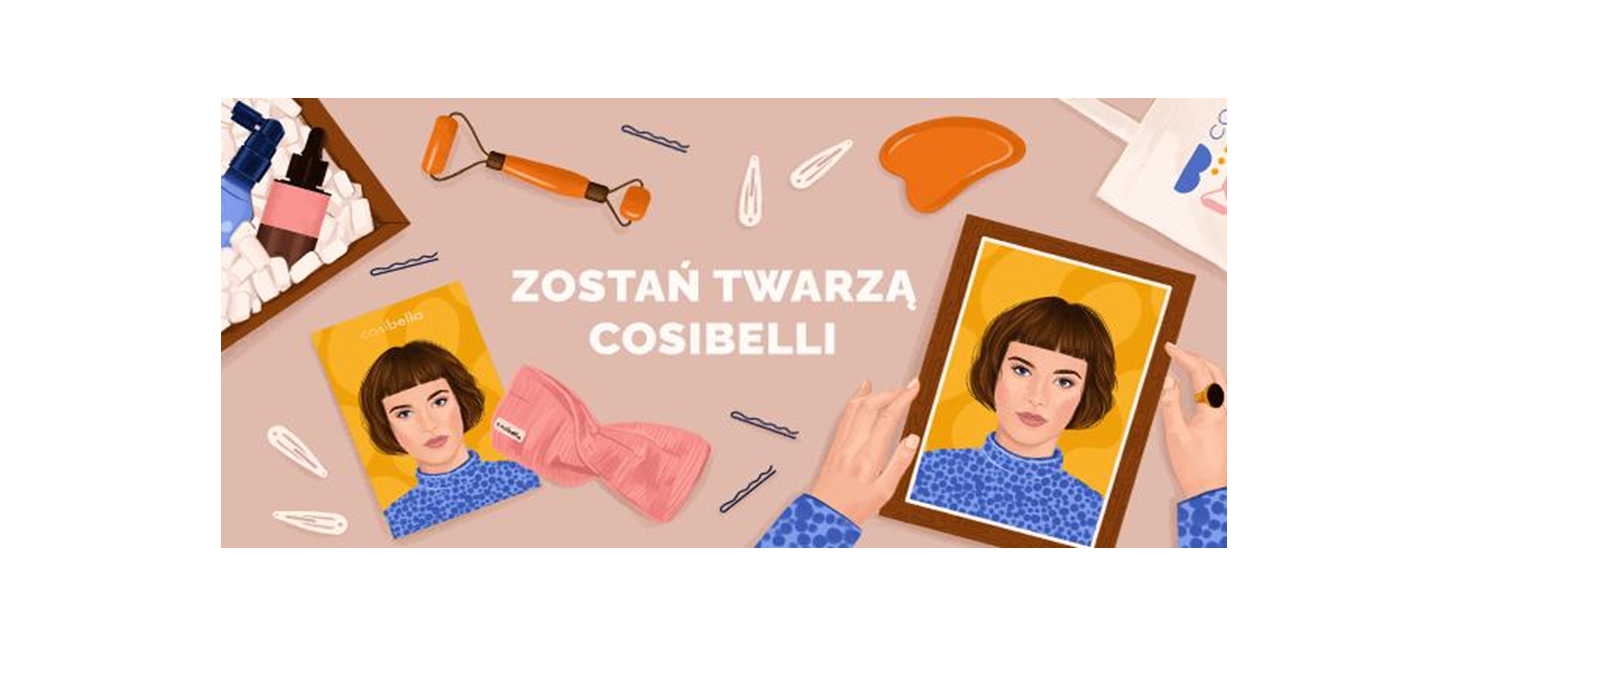 Cosibella startuje z nową stroną i ogłasza konkurs dla Klientów “Zostań Twarzą Cosibelli”